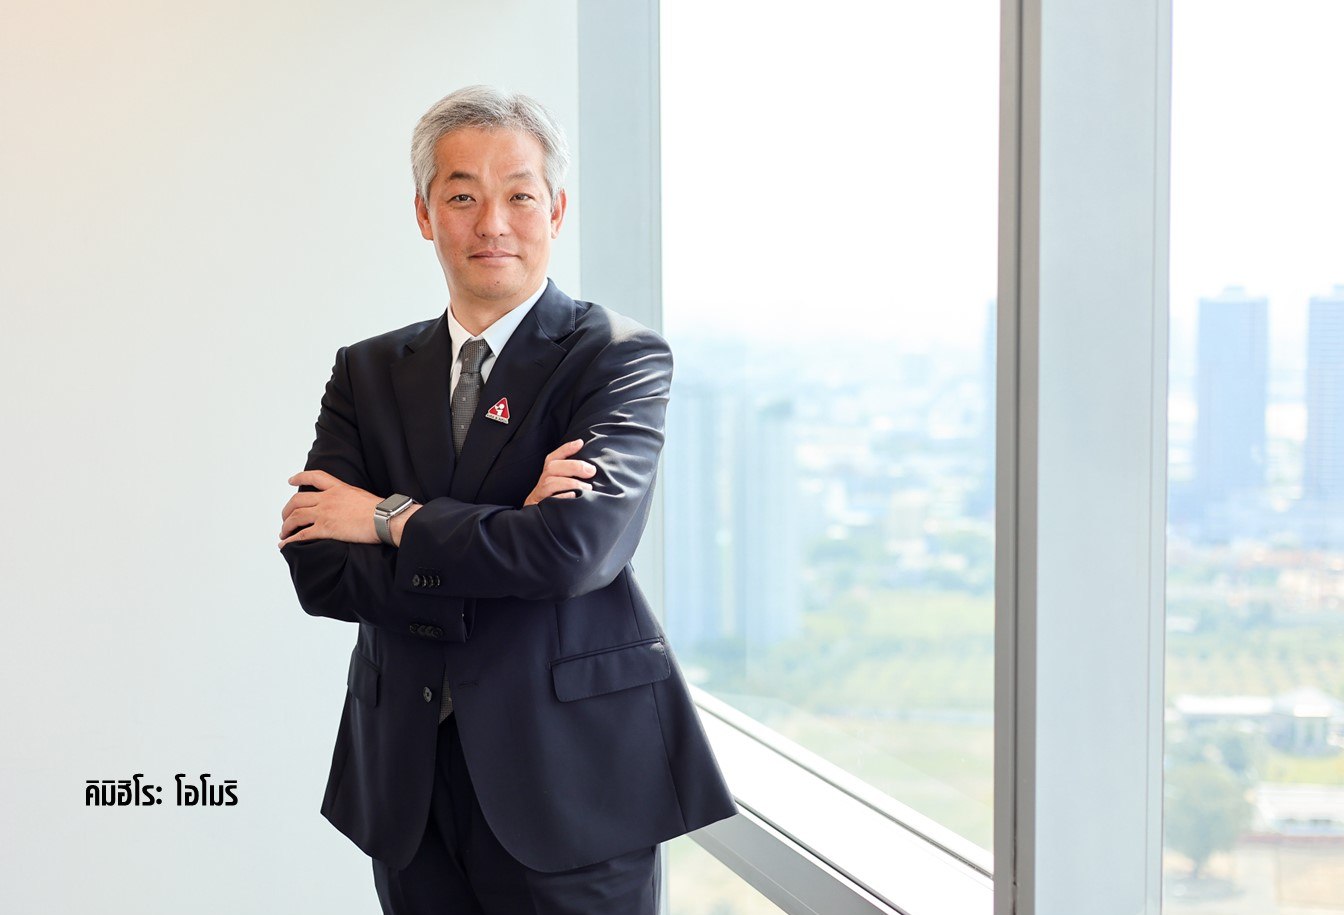 'ไอร่า แอนด์ ไอฟุล' ตั้ง 'คิมิฮิโระ โอโมริ' นั่ง CEO คนใหม่